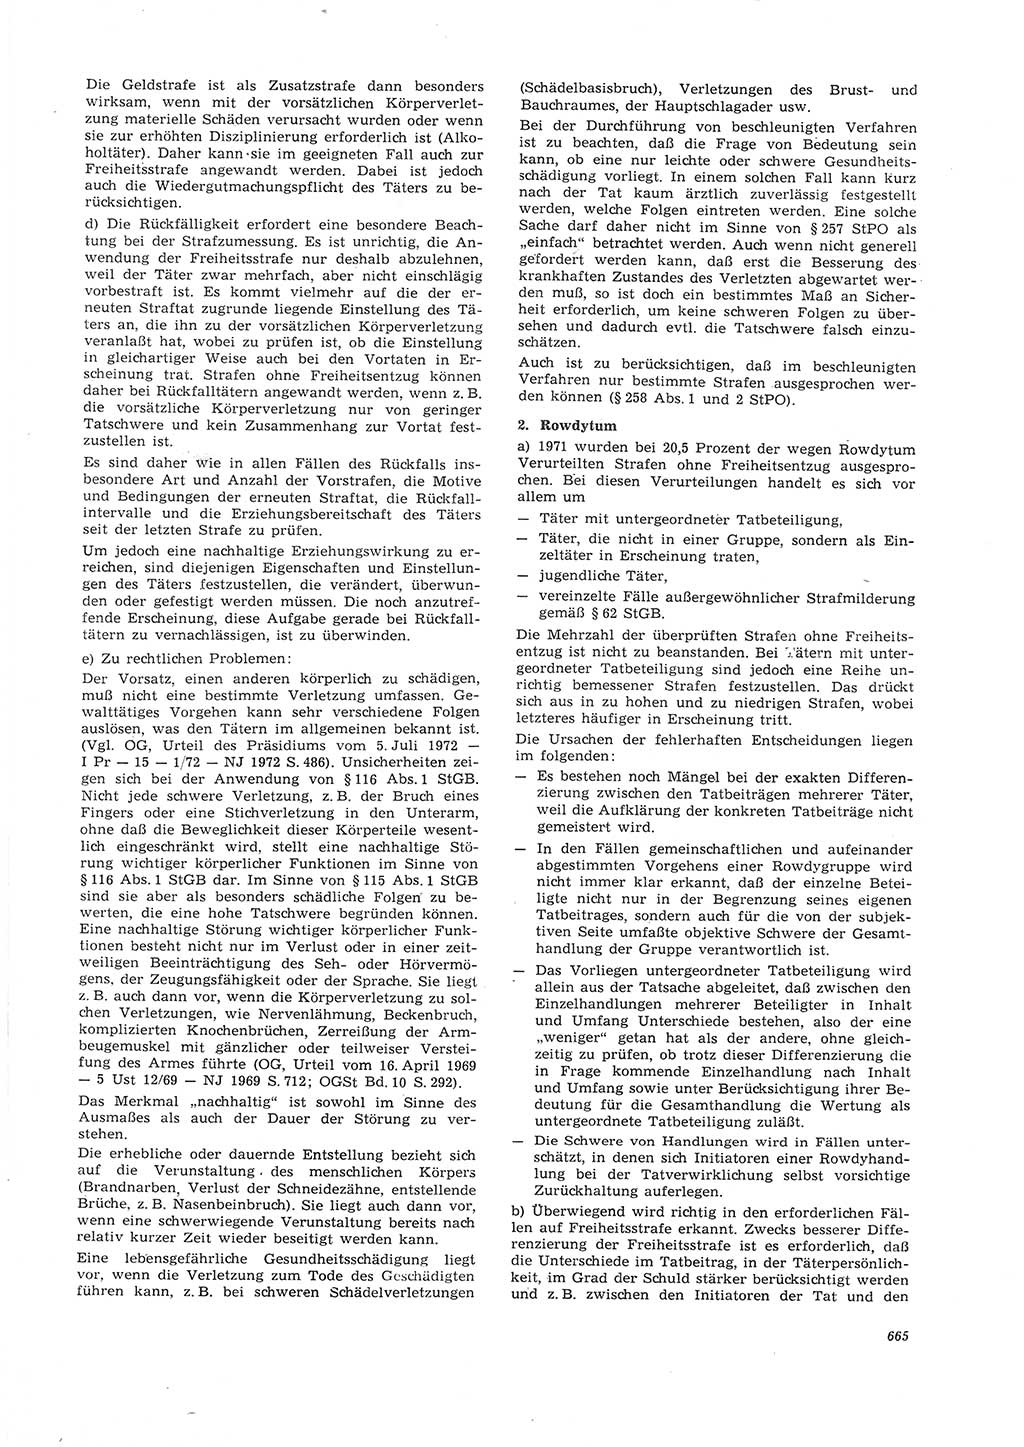 Neue Justiz (NJ), Zeitschrift für Recht und Rechtswissenschaft [Deutsche Demokratische Republik (DDR)], 26. Jahrgang 1972, Seite 665 (NJ DDR 1972, S. 665)